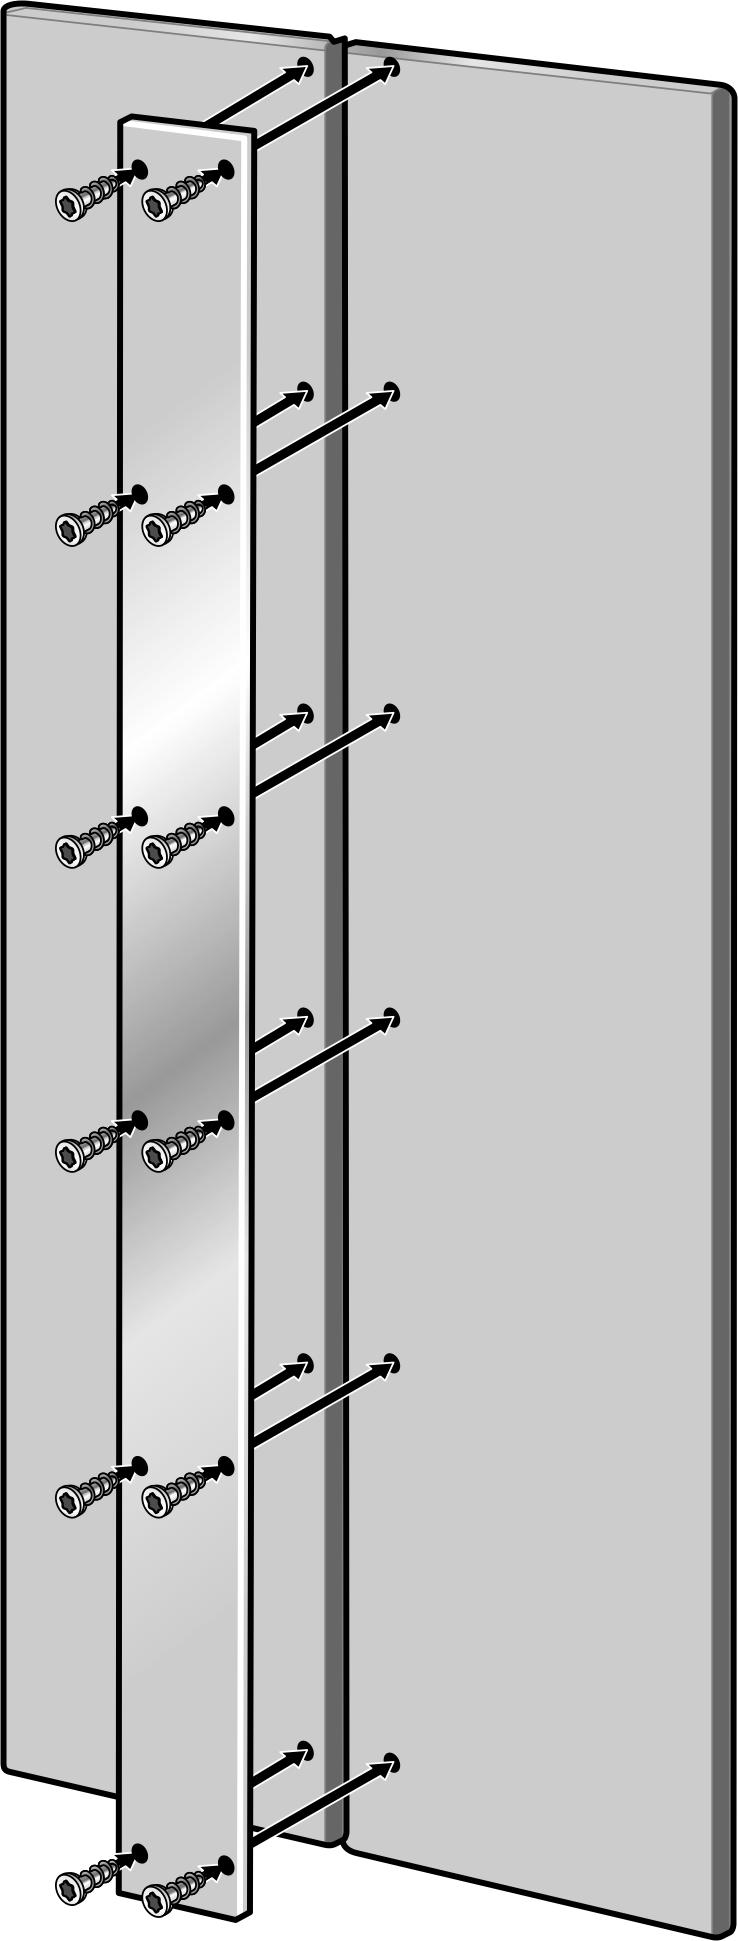 Metal þeridin dolap kapaklarýna takýlmasý sýrasýnda, vidalarýn mümkün olan maksimum uzunluðuna ve deliklerin pozisyonuna dikkat edilmelidir.